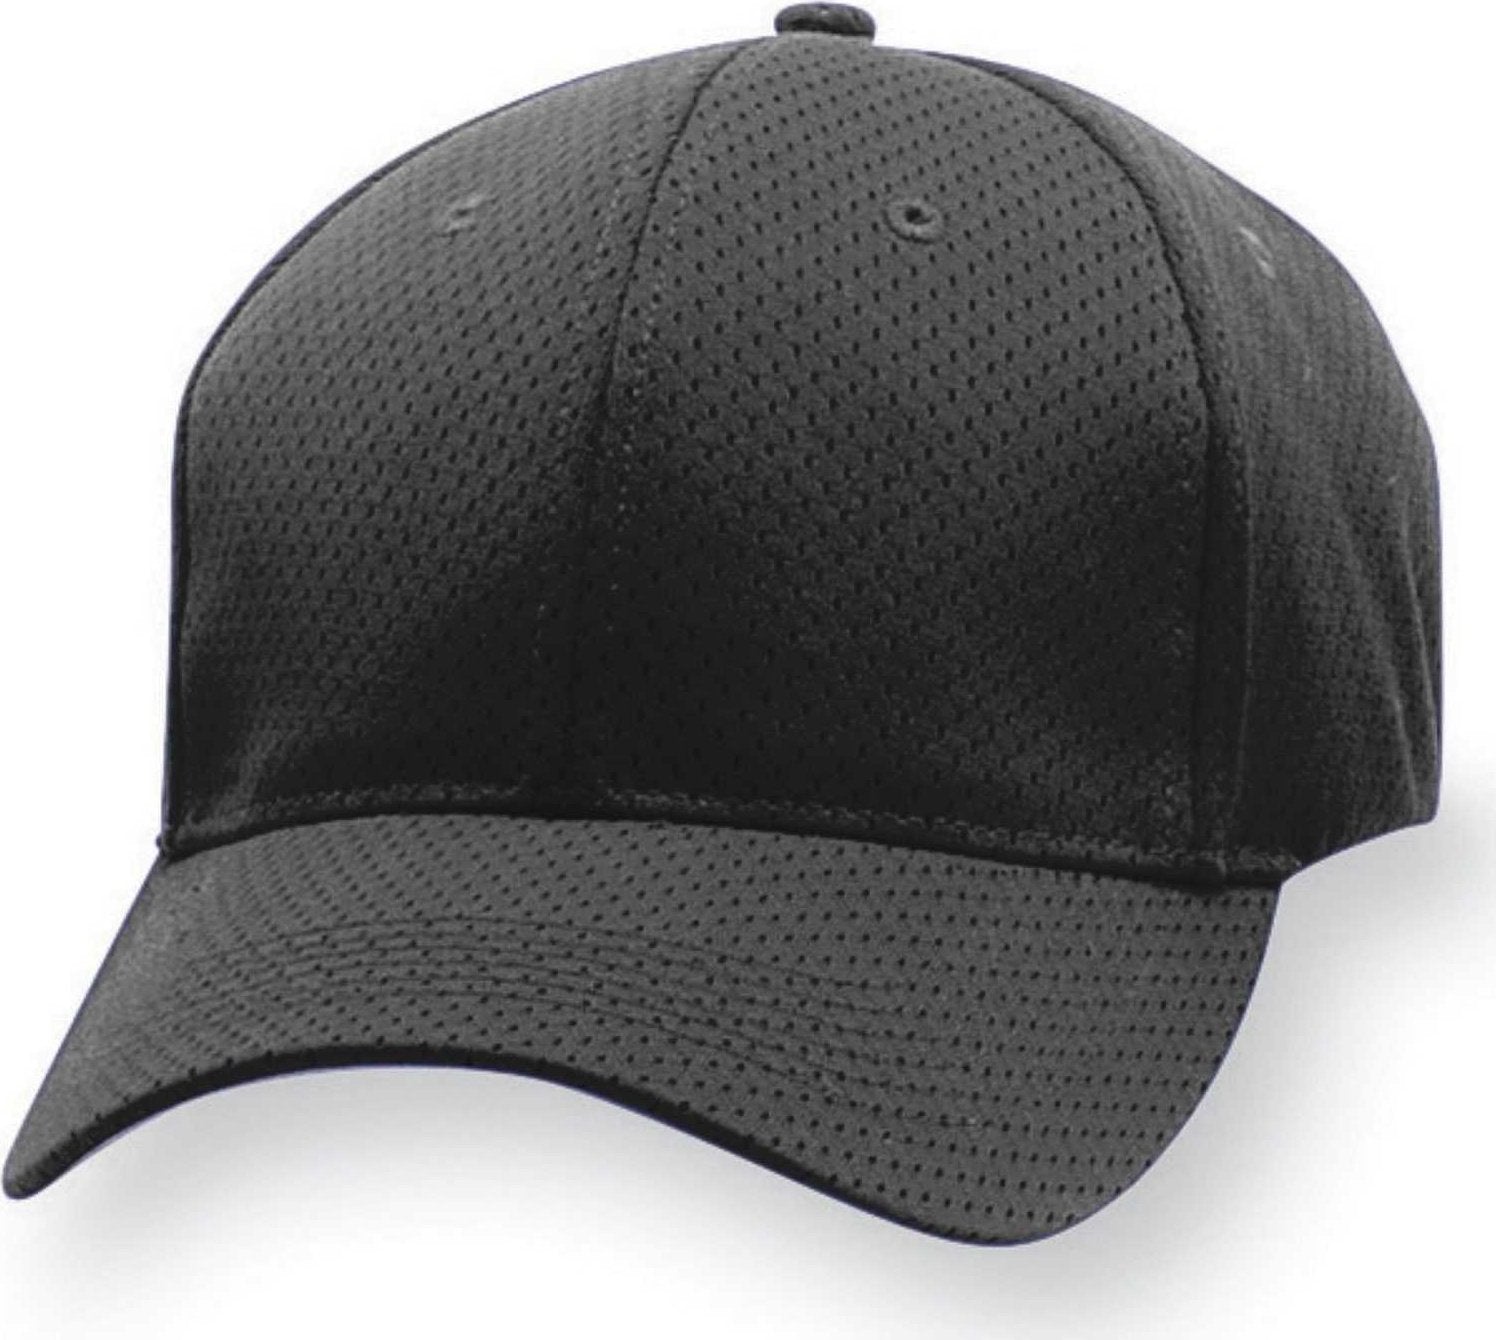 Augusta 6232 Sport Flex Athletic Mesh Cap - Black - HIT a Double